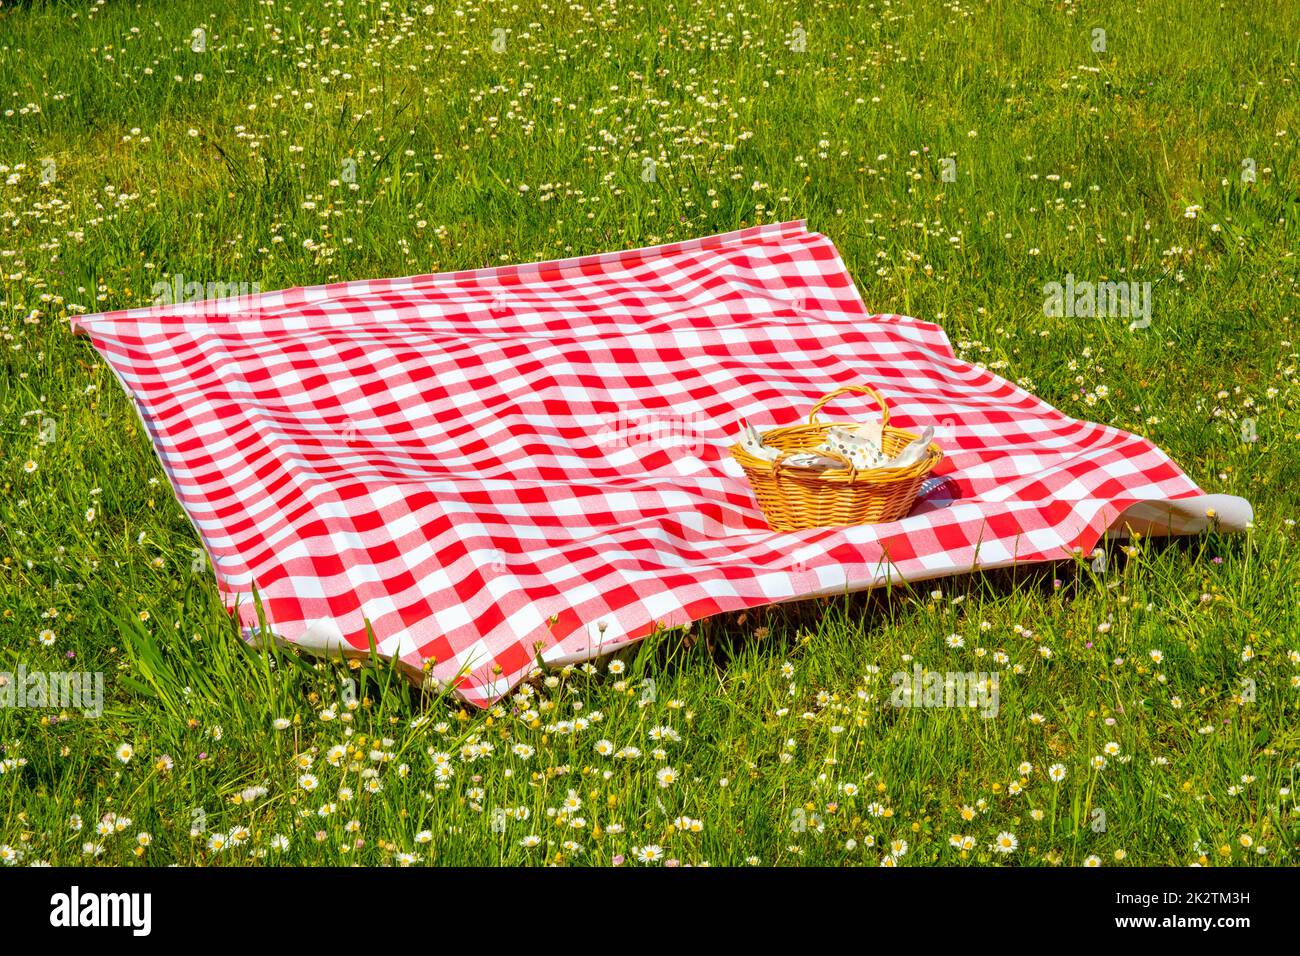 Rotes Picknicktuch. Rote karierte Picknickdecke mit leerem Korb auf einer Wiese mit blühenden Gänseblümchen. Schöner Hintergrund für die Produktplatzierung oder -Montage. Stockfoto